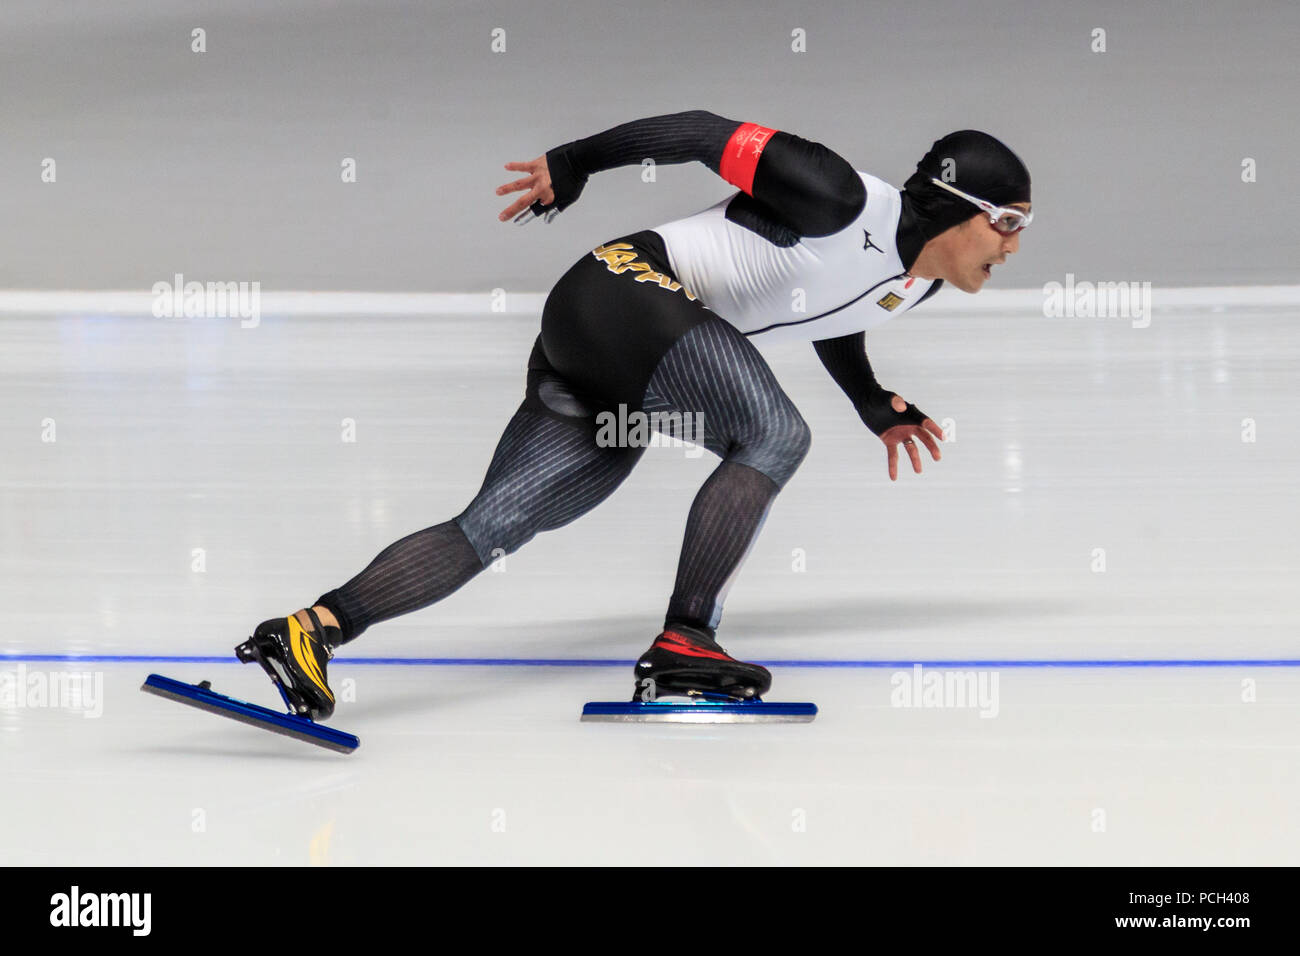 Compitiendo en el patinaje de velocidad - Mens' de 500m en los Juegos Olímpicos de Invierno PyeongChang 2018 Foto de stock